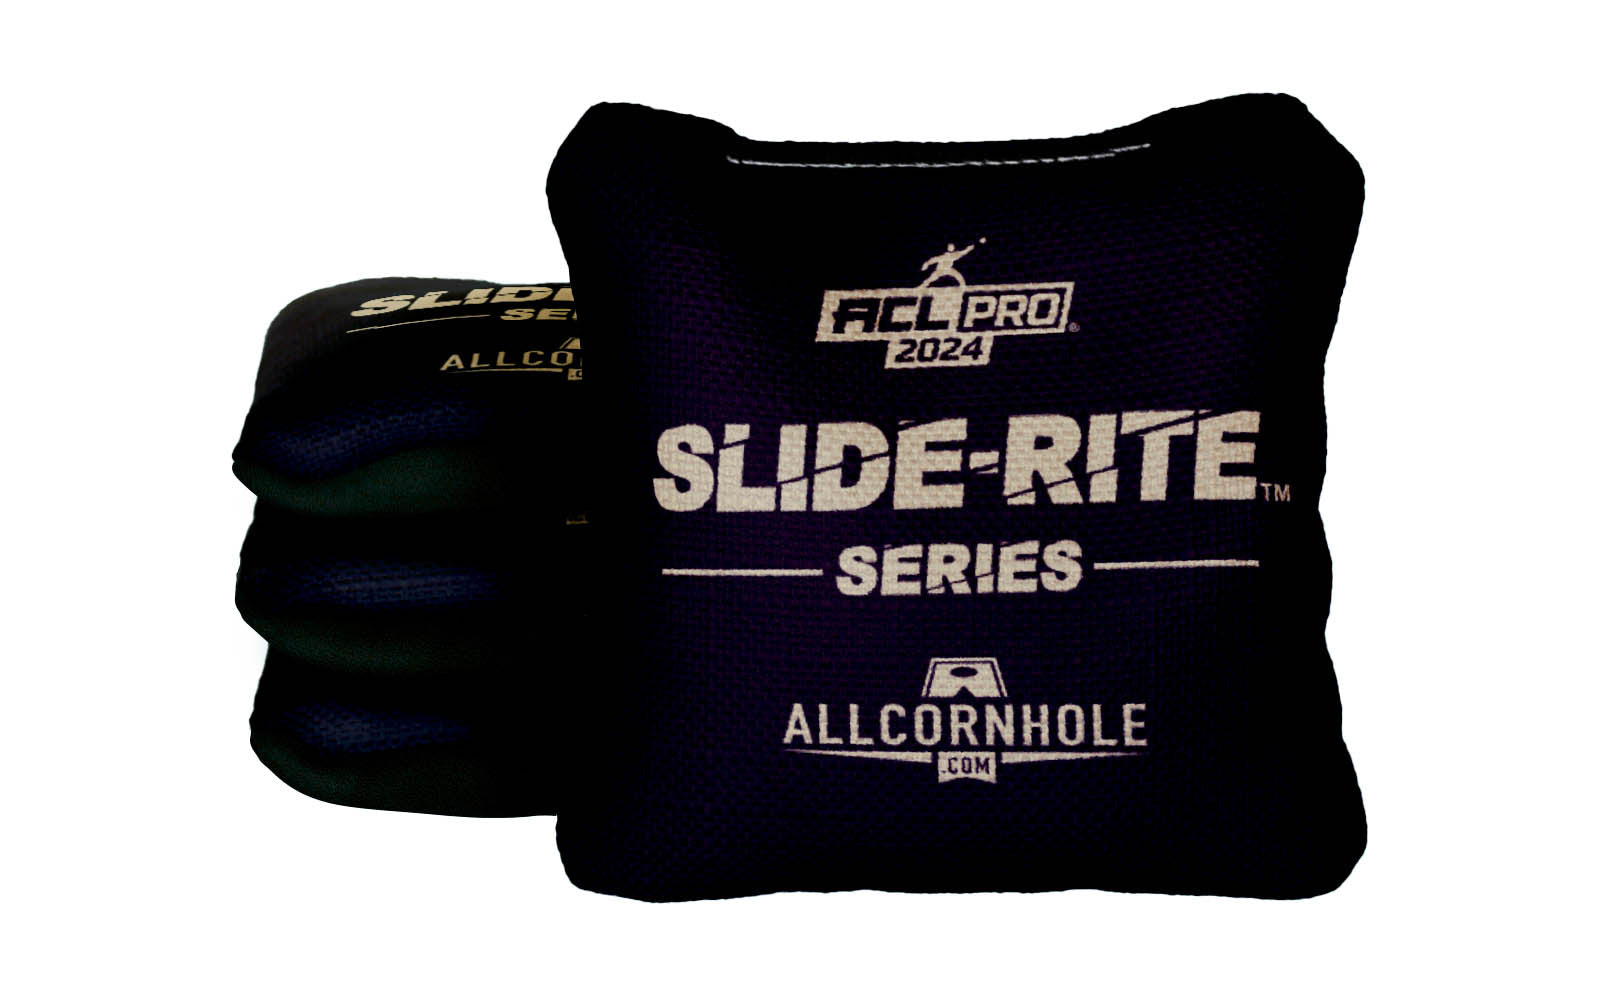 Officially Licensed Collegiate Cornhole Bags - AllCornhole Slide Rite - Set of 4 - Wake Forest University